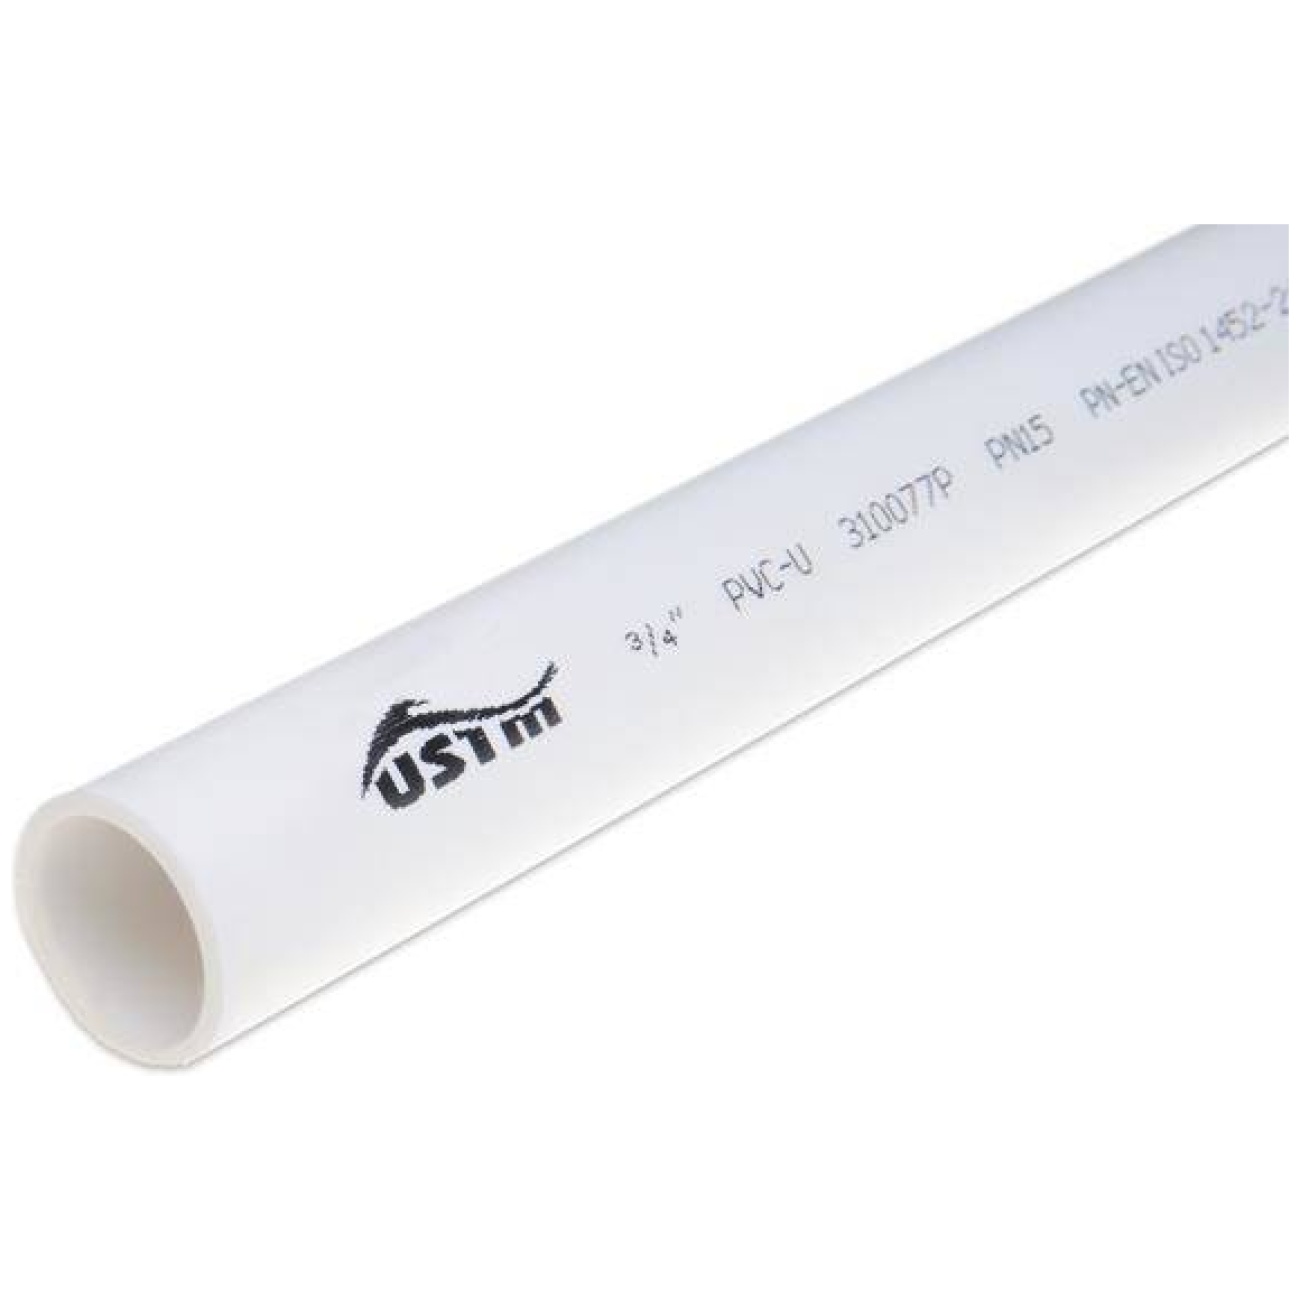 Rura do odprowadzenia skroplin PVC, sztywna 3/4" długość 3mb - UST-M / NIBCO